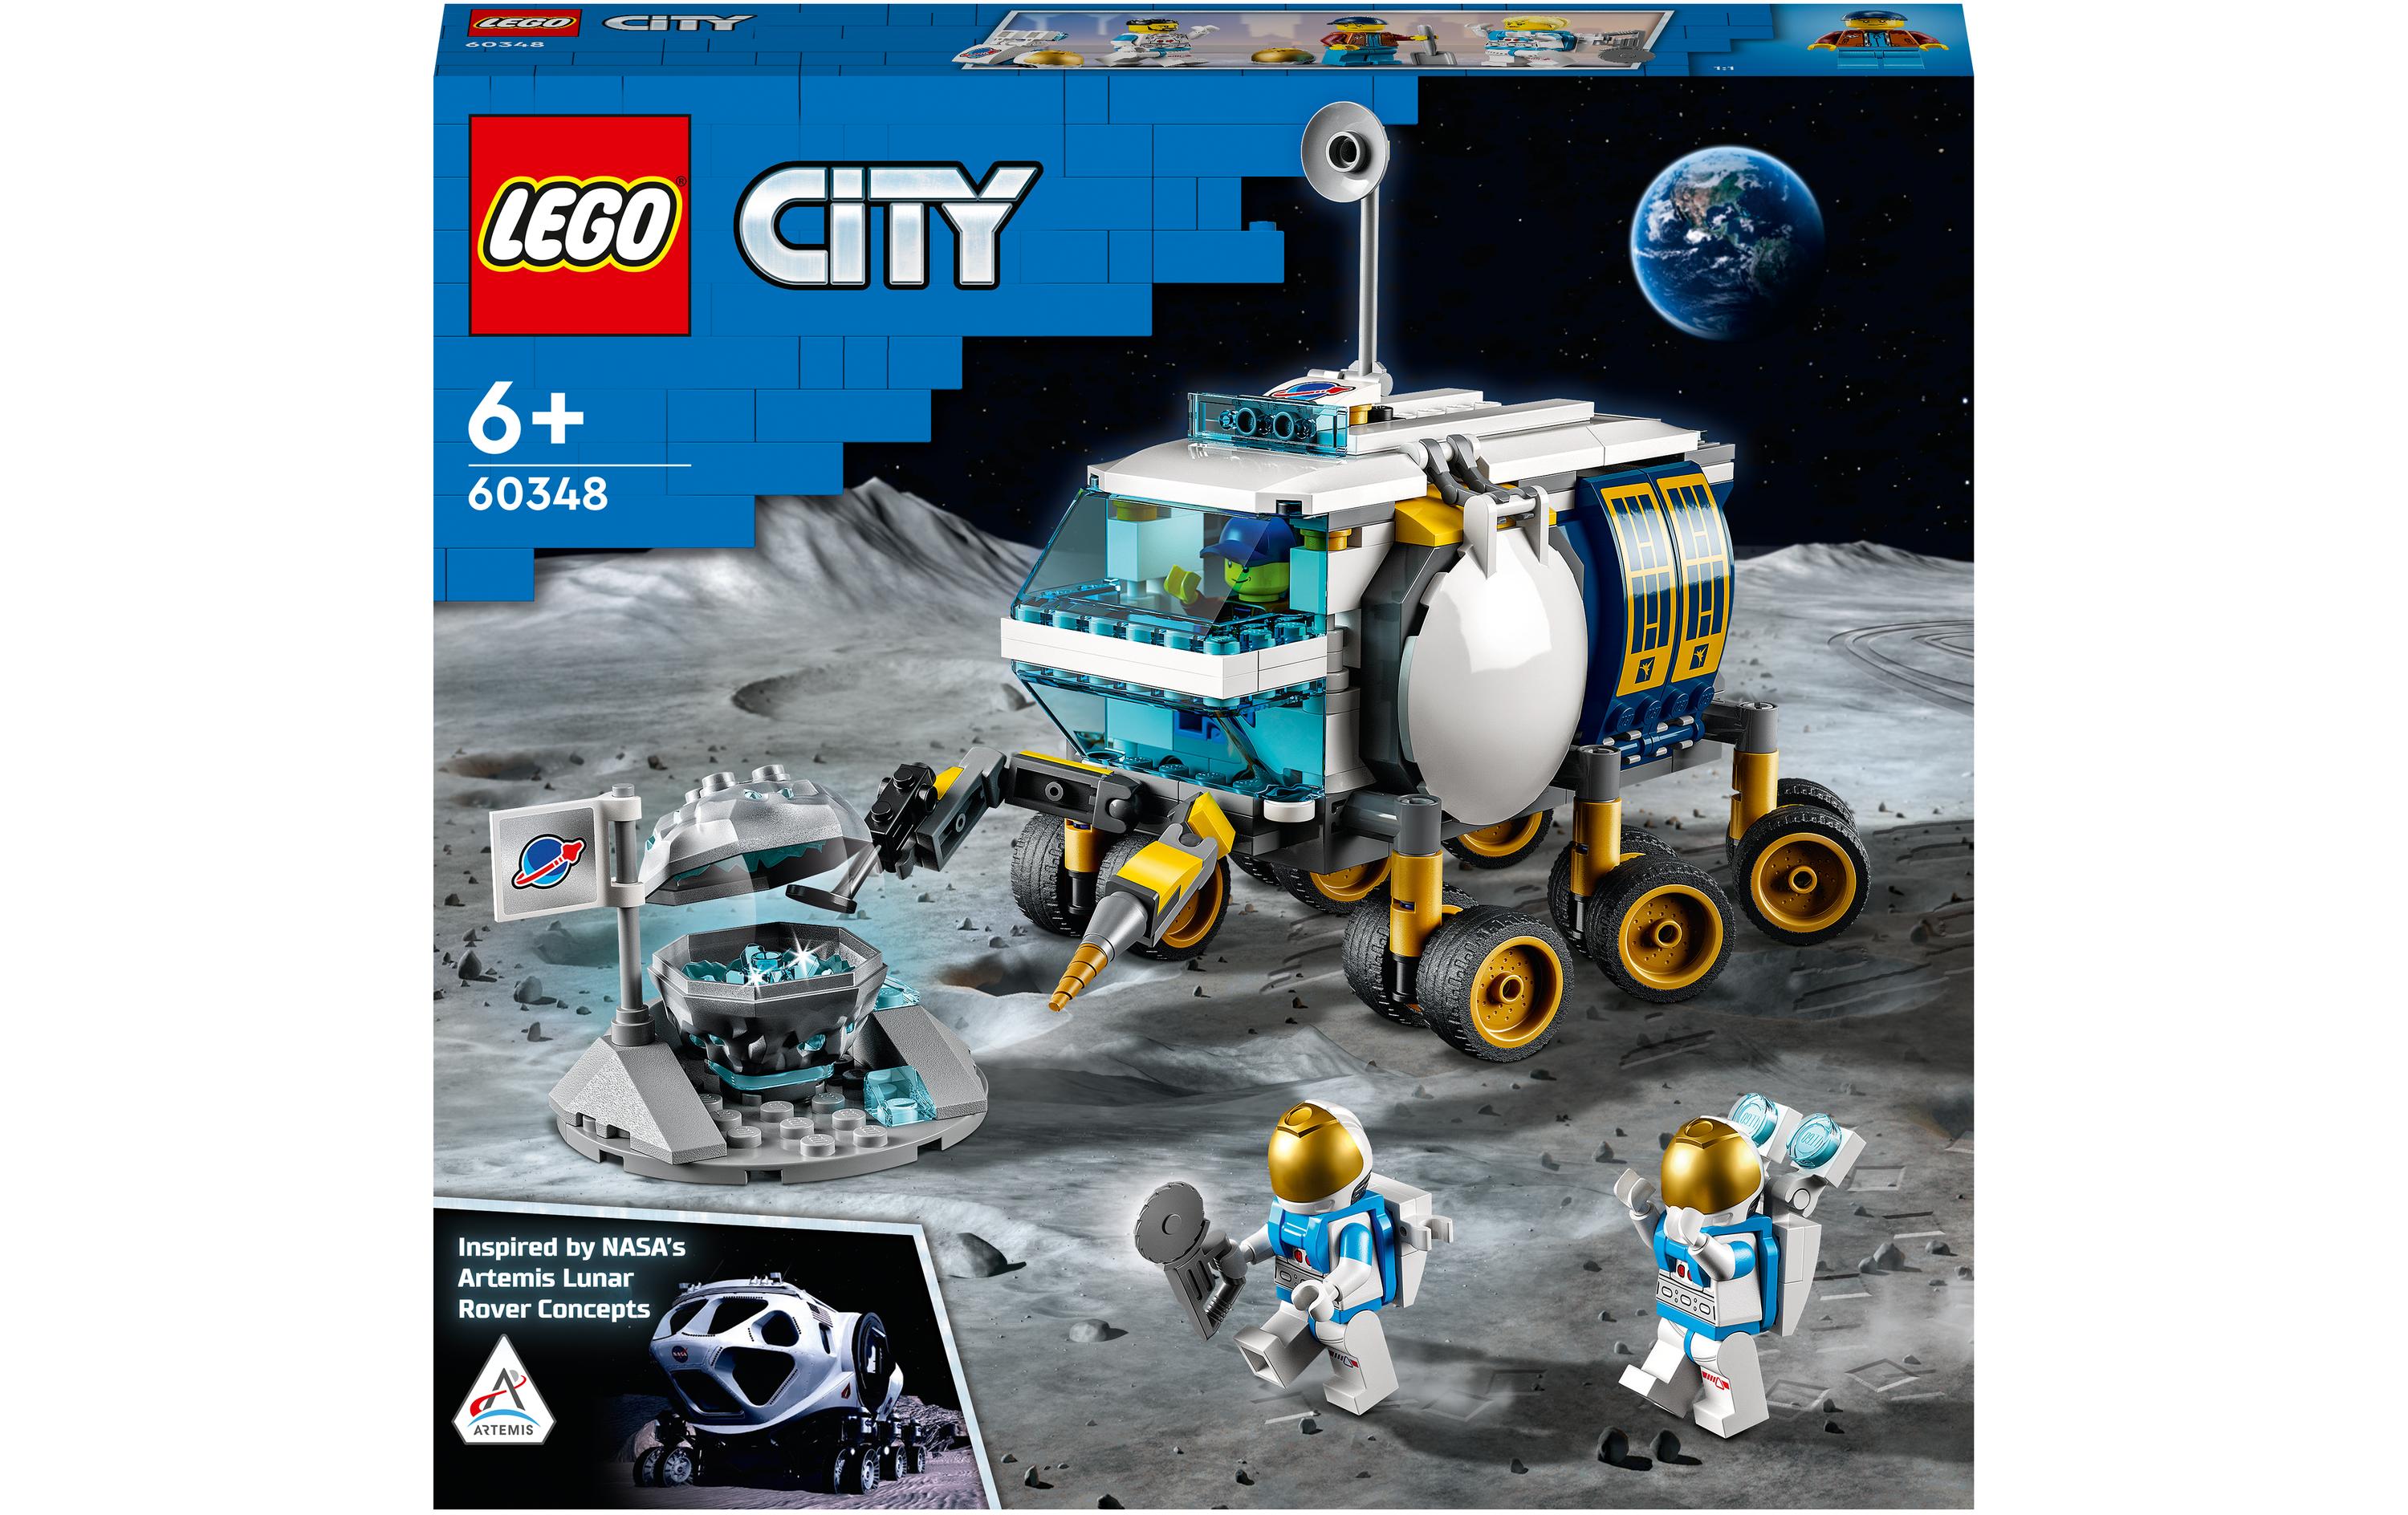 LEGO® City Mond-Rover 60348 - im GOLDSTIEN.SHOP verfügbar mit Gratisversand ab Schweizer Lager! (5702017161730)